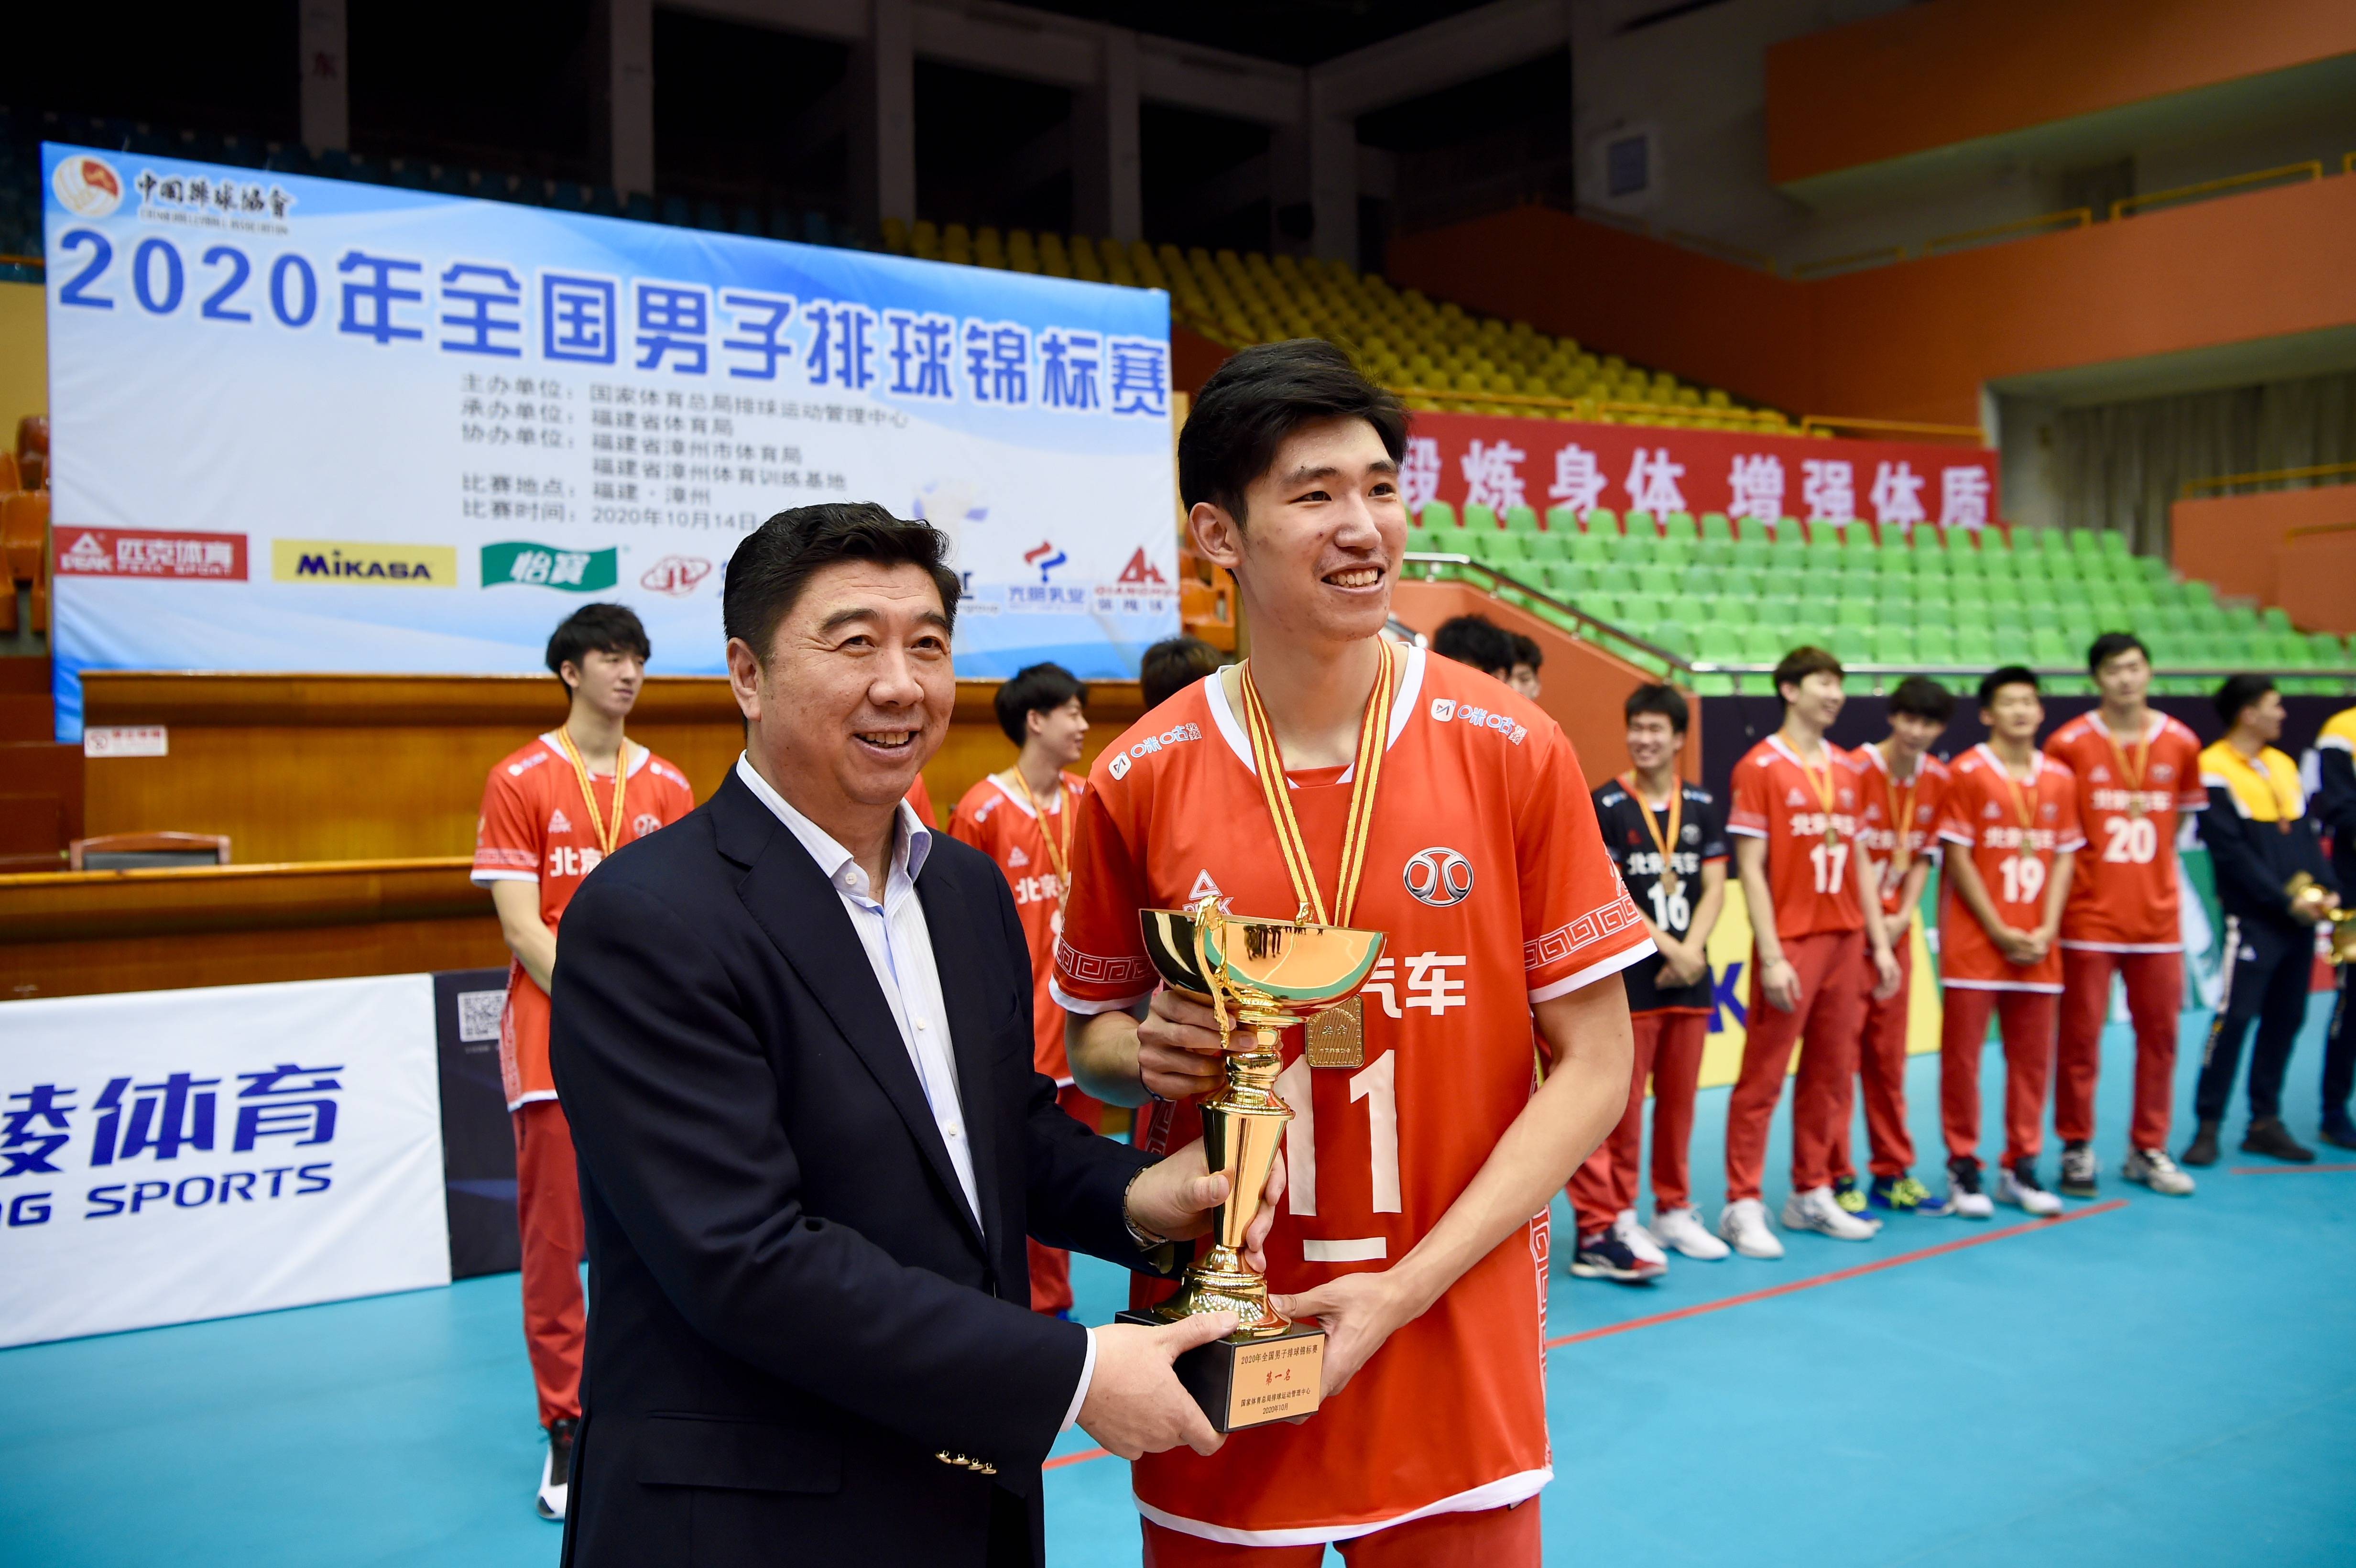 当日,在福建省漳州体育训练基地举行的2020年全国男排锦标赛决赛中